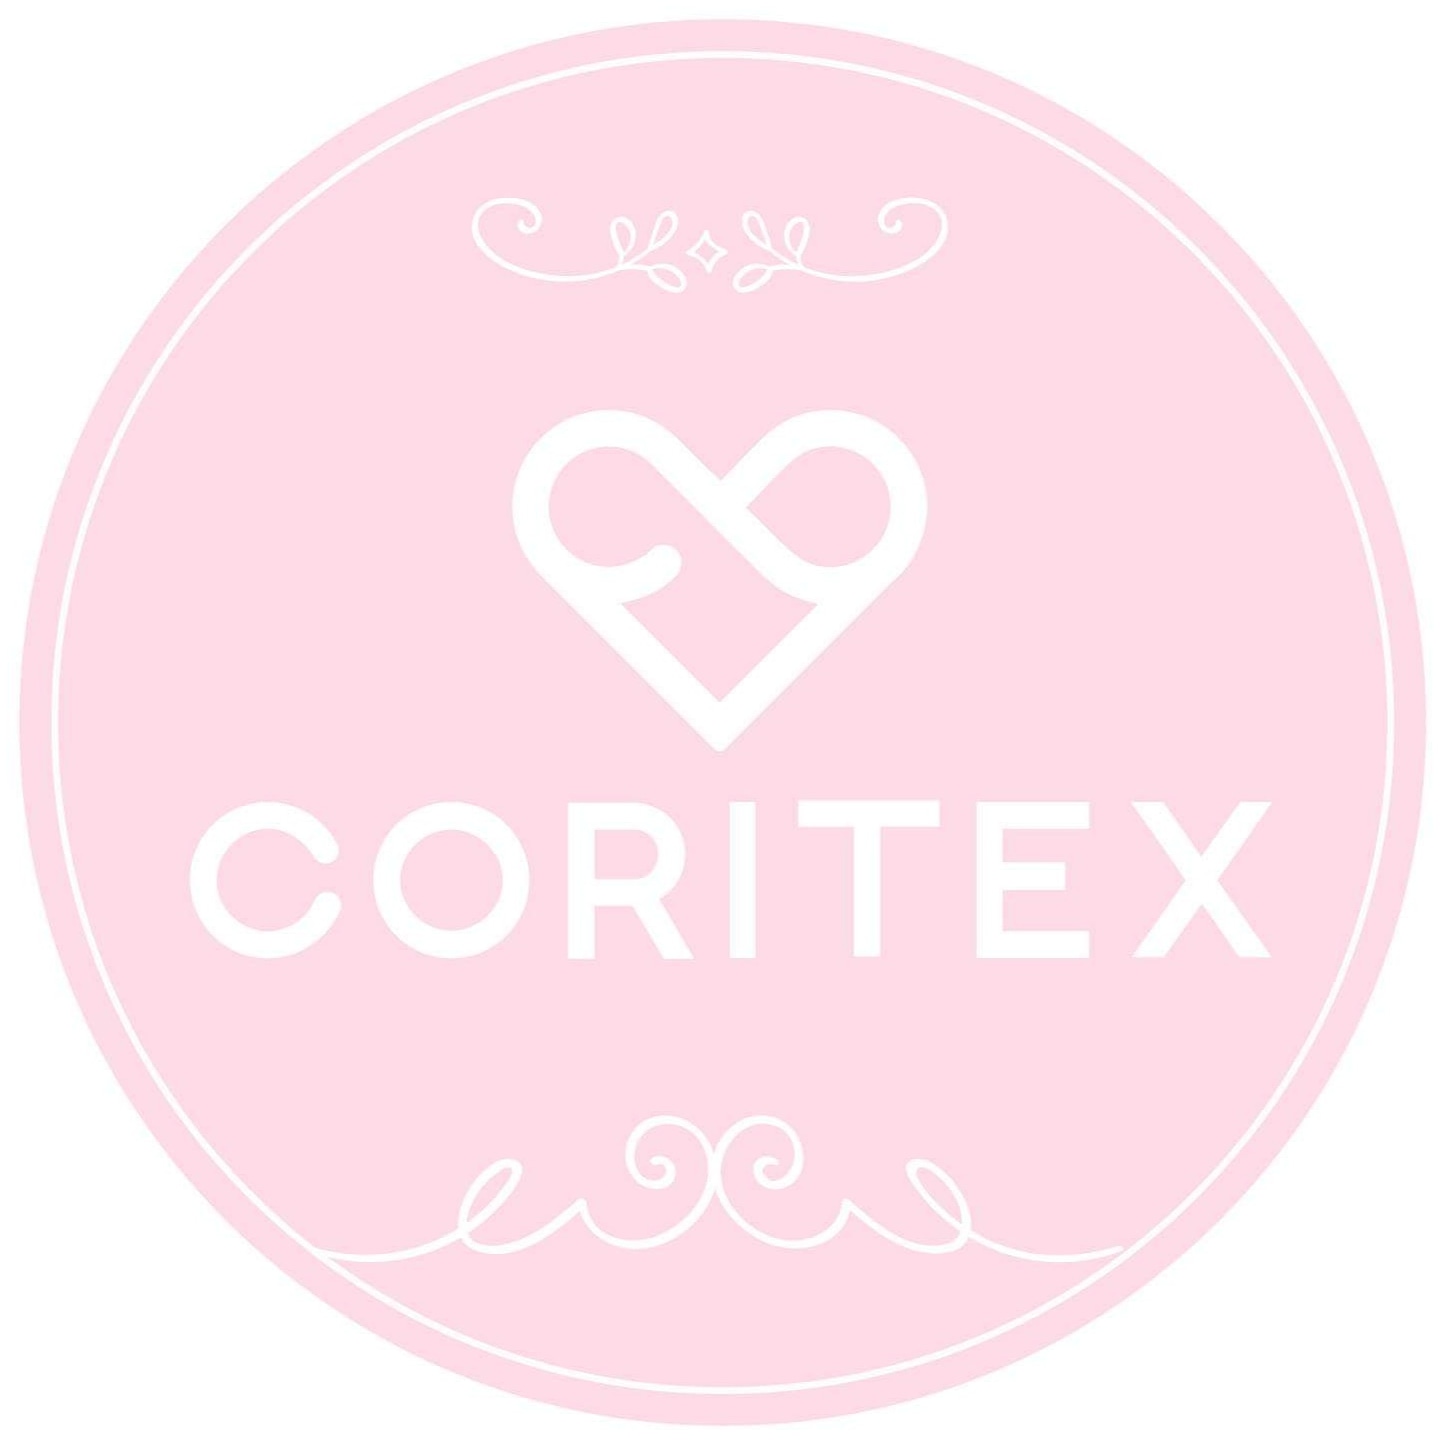 Coritex